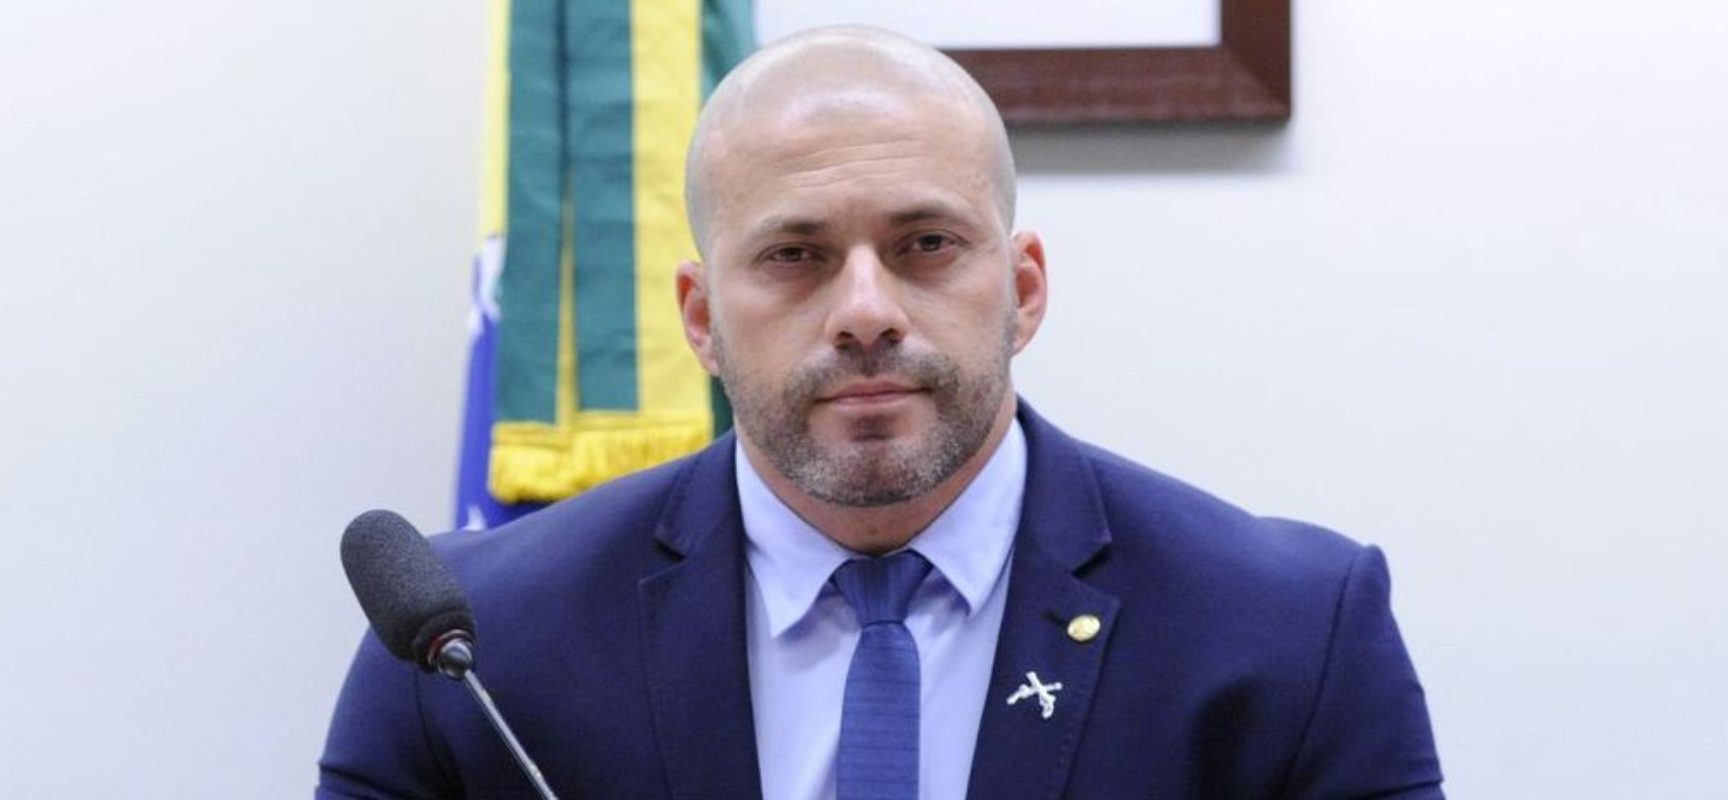 Moraes acaba de determinar bloqueio de redes sociais de deputado